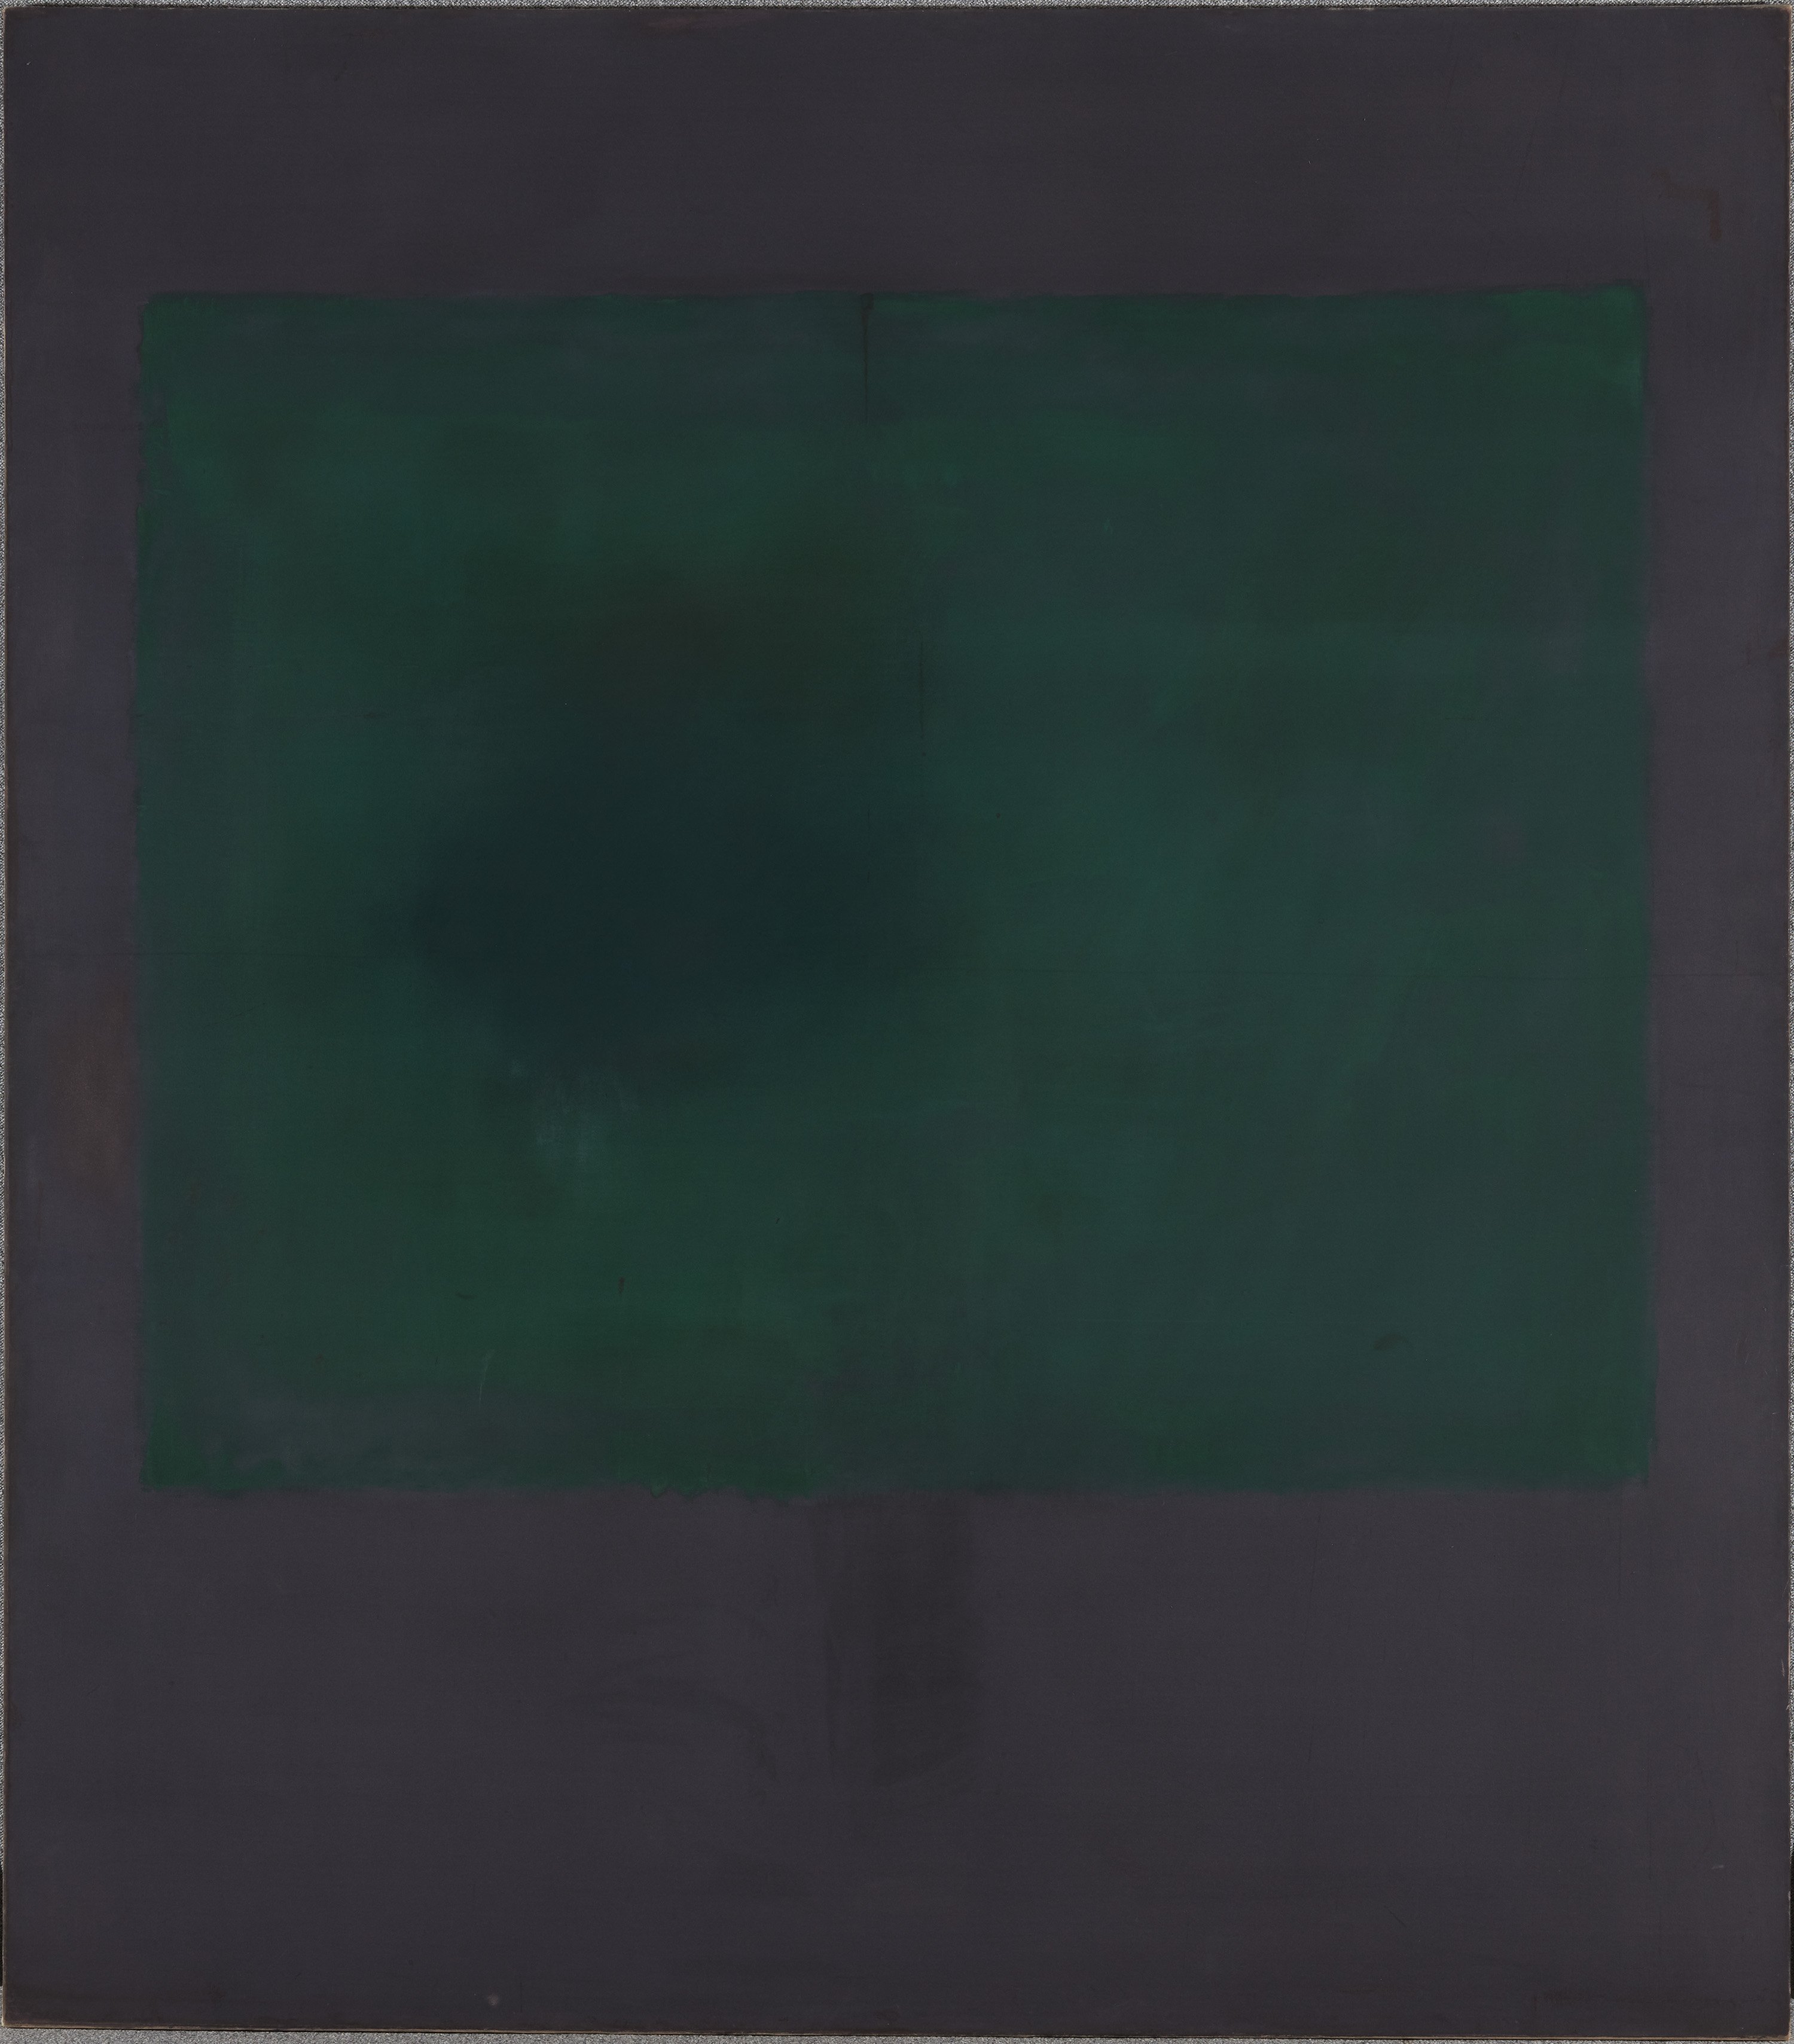 Untitled (Green on Maroon). Sin título (Verde sobre morado), 1961